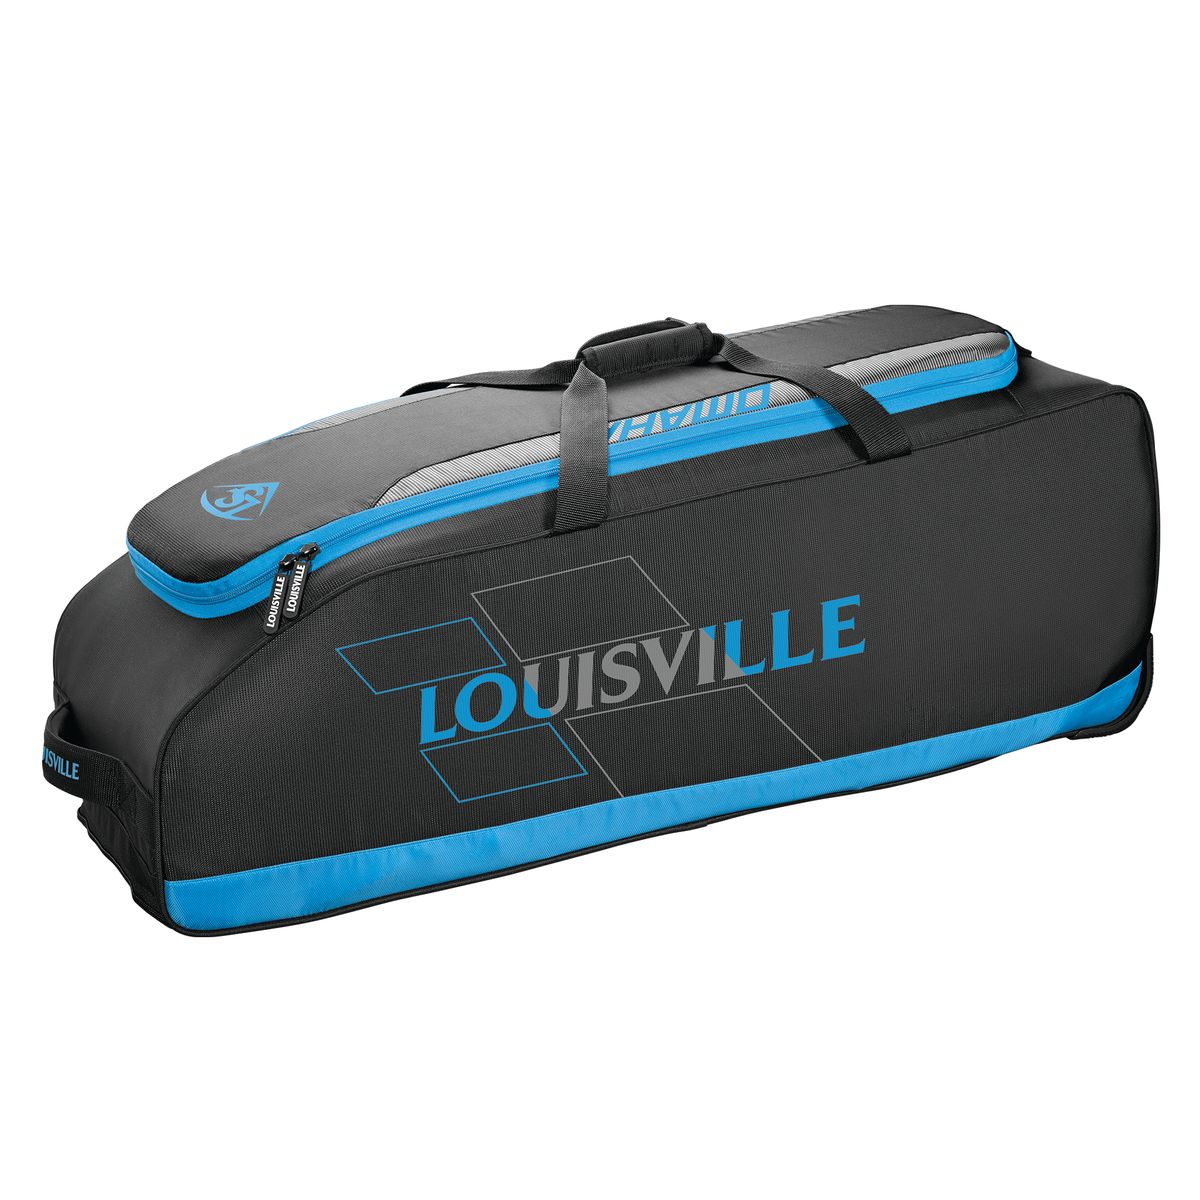 RIG BAG - OMAHA Louisville Slugger  VICTORY BLUE O/S   WHEELED BAGS  (5455677030564)